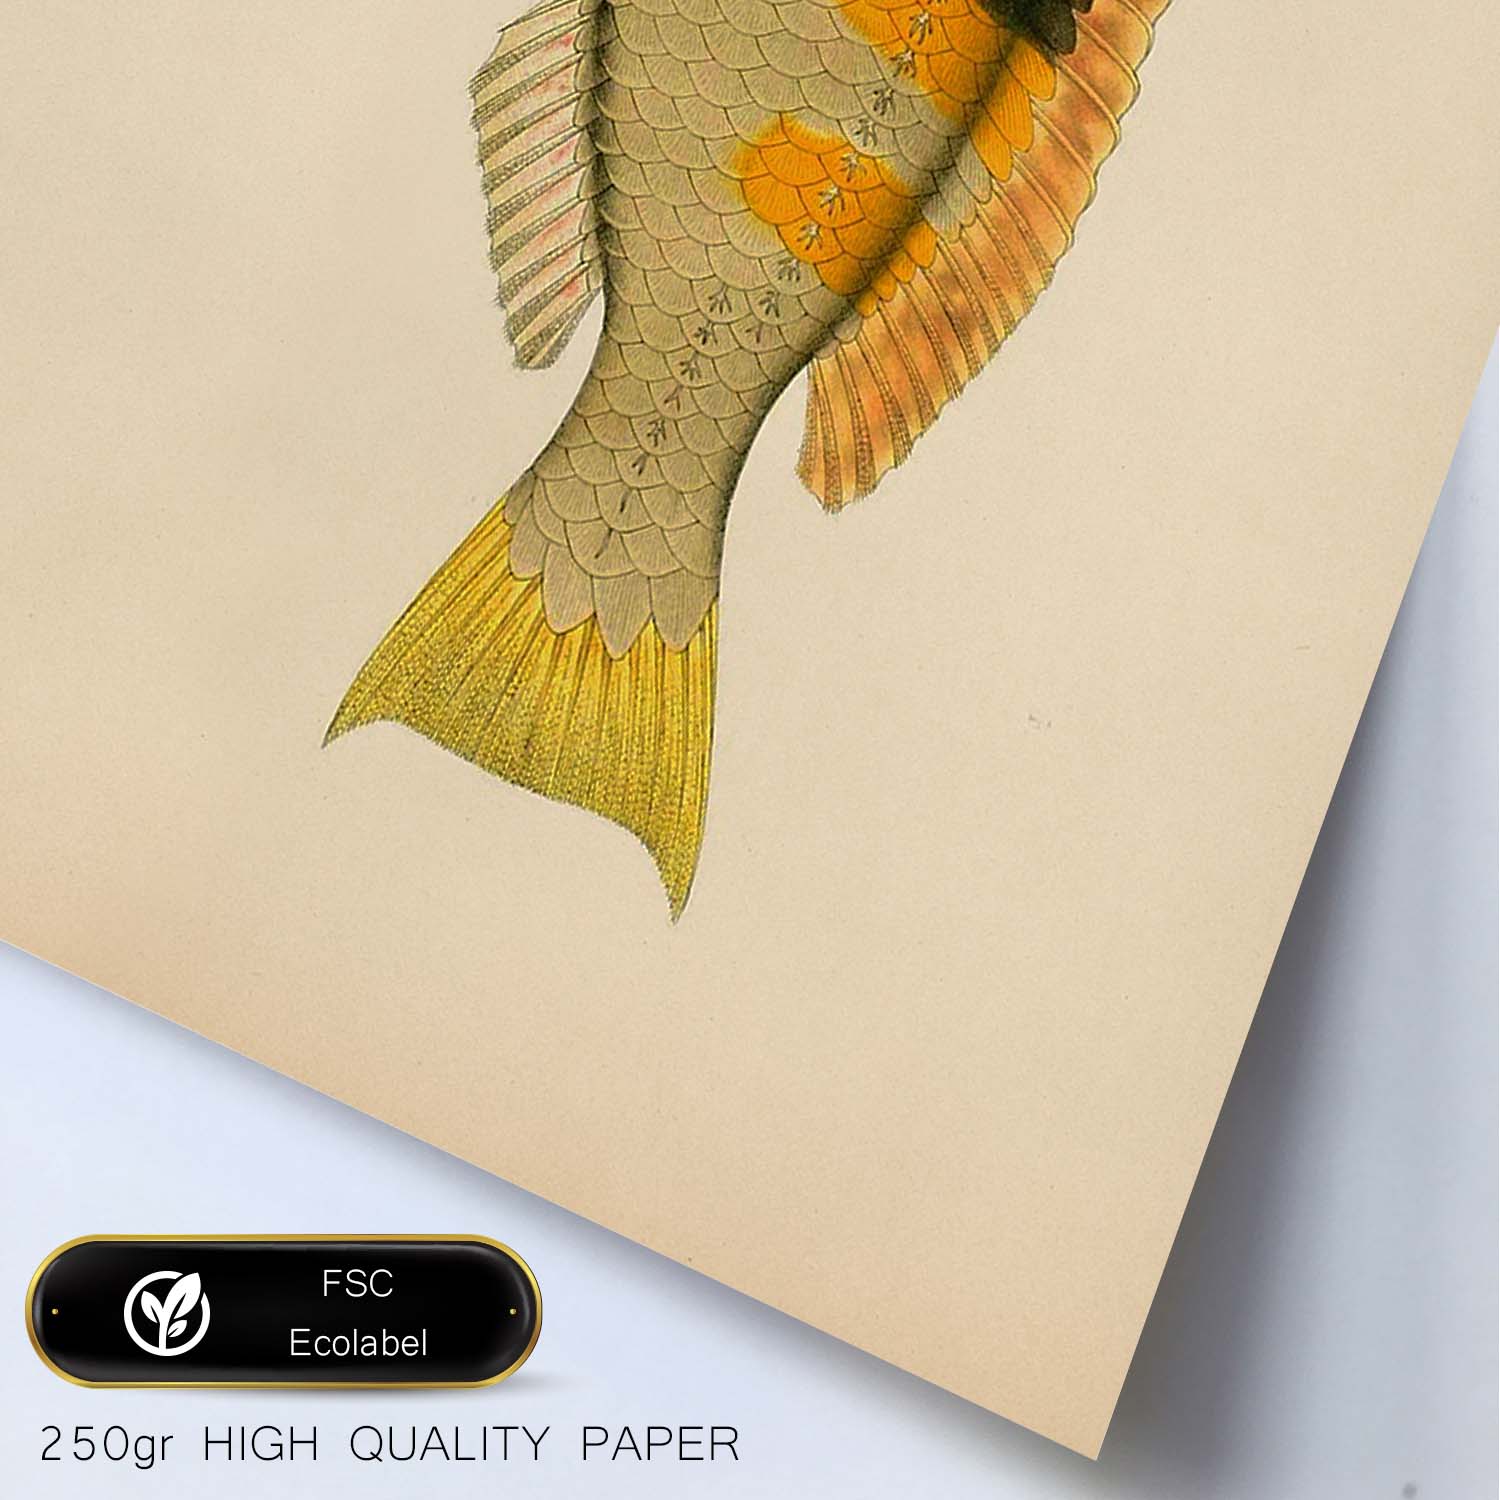 Lámina de pez amarillo, negro y naranja en , fondo papel vintage.-Artwork-Nacnic-Nacnic Estudio SL